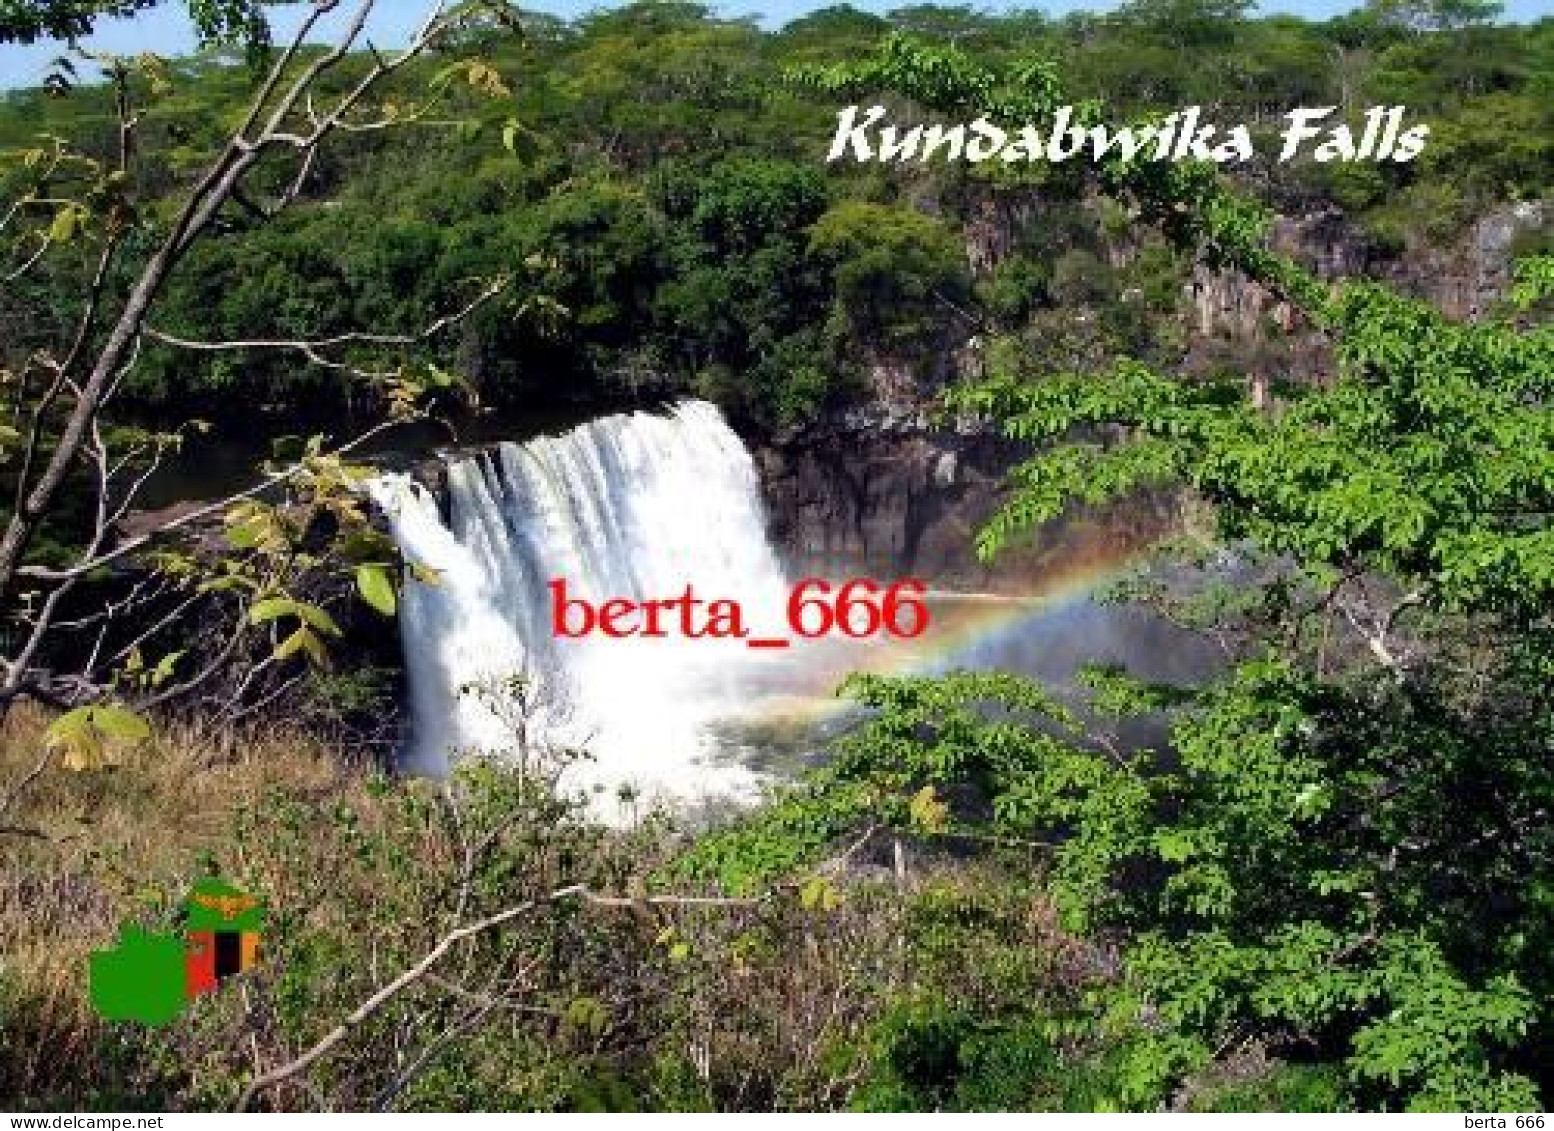 Zambia Kundabwika Falls New Postcard - Sambia